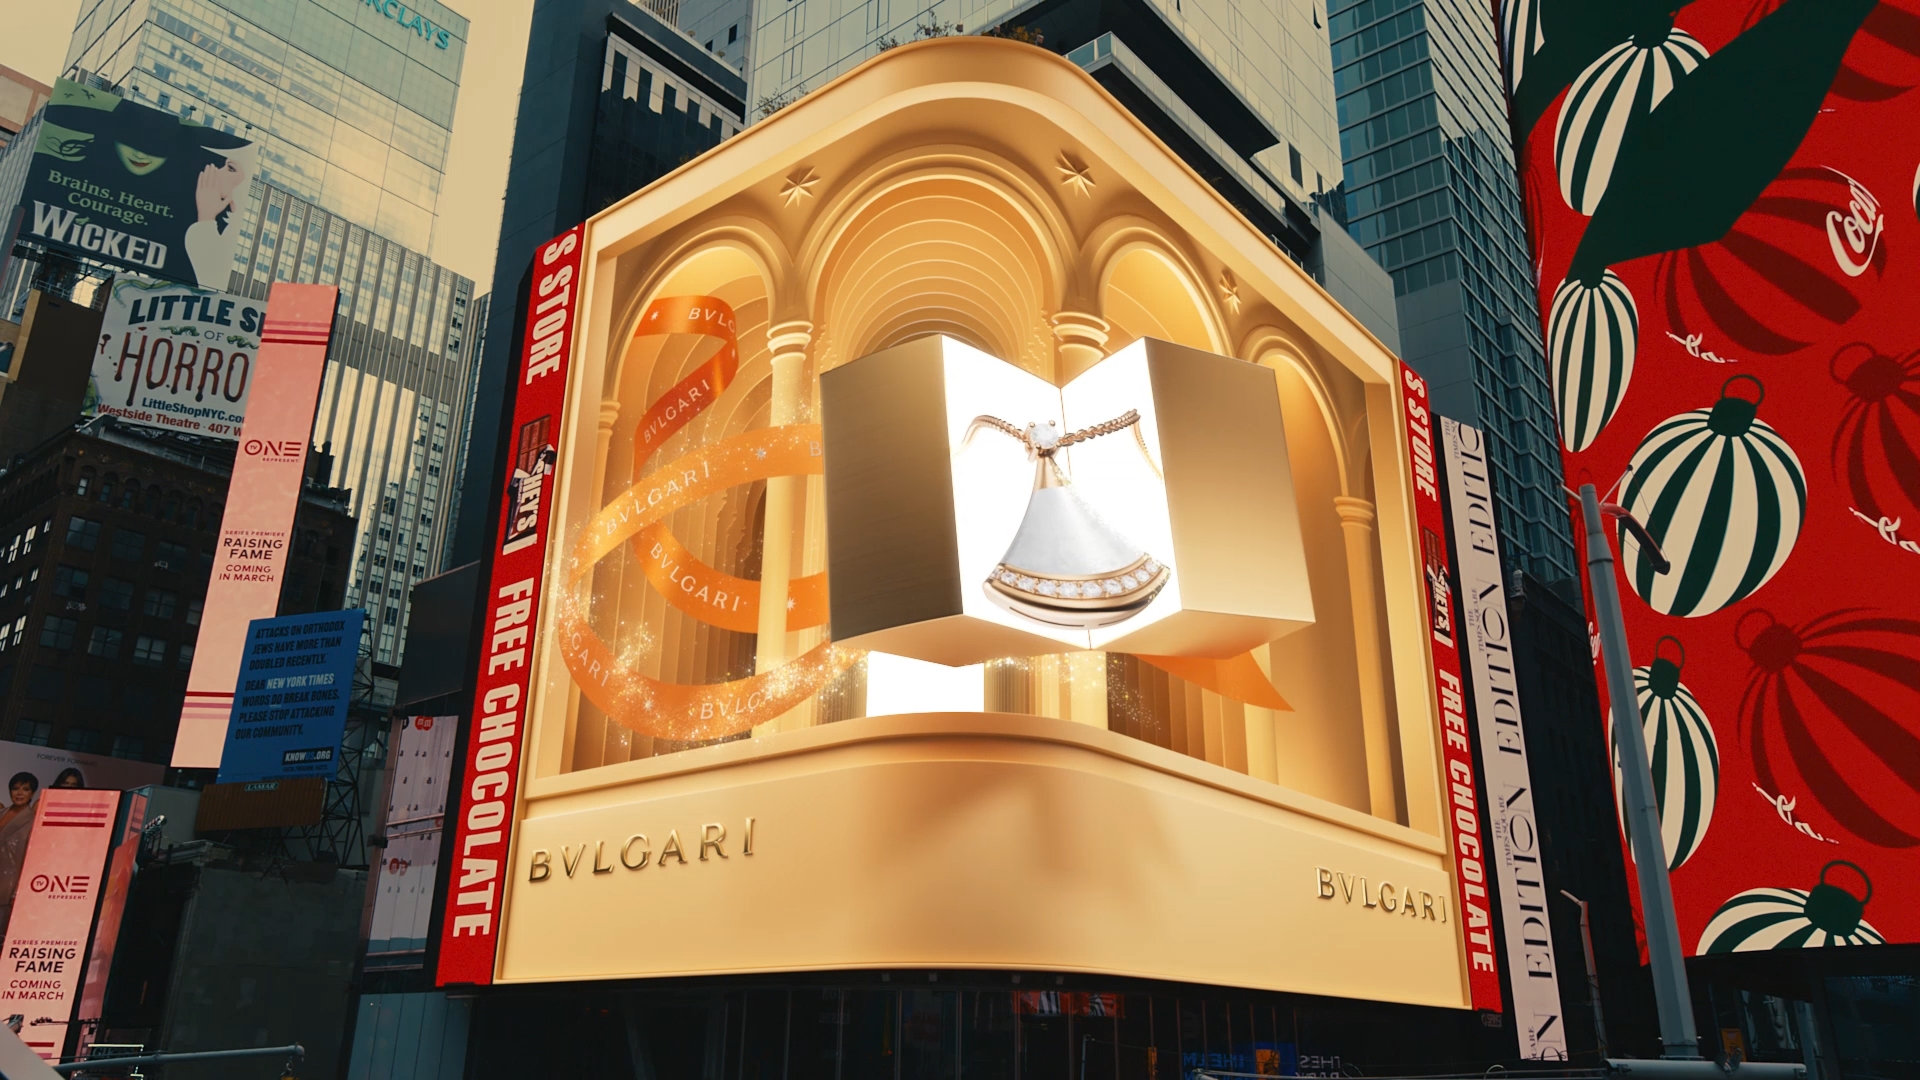 bulgari_3d_billboard_new_york_edit_30sec_16x9-Original.mp4_snapshot_00.07.211